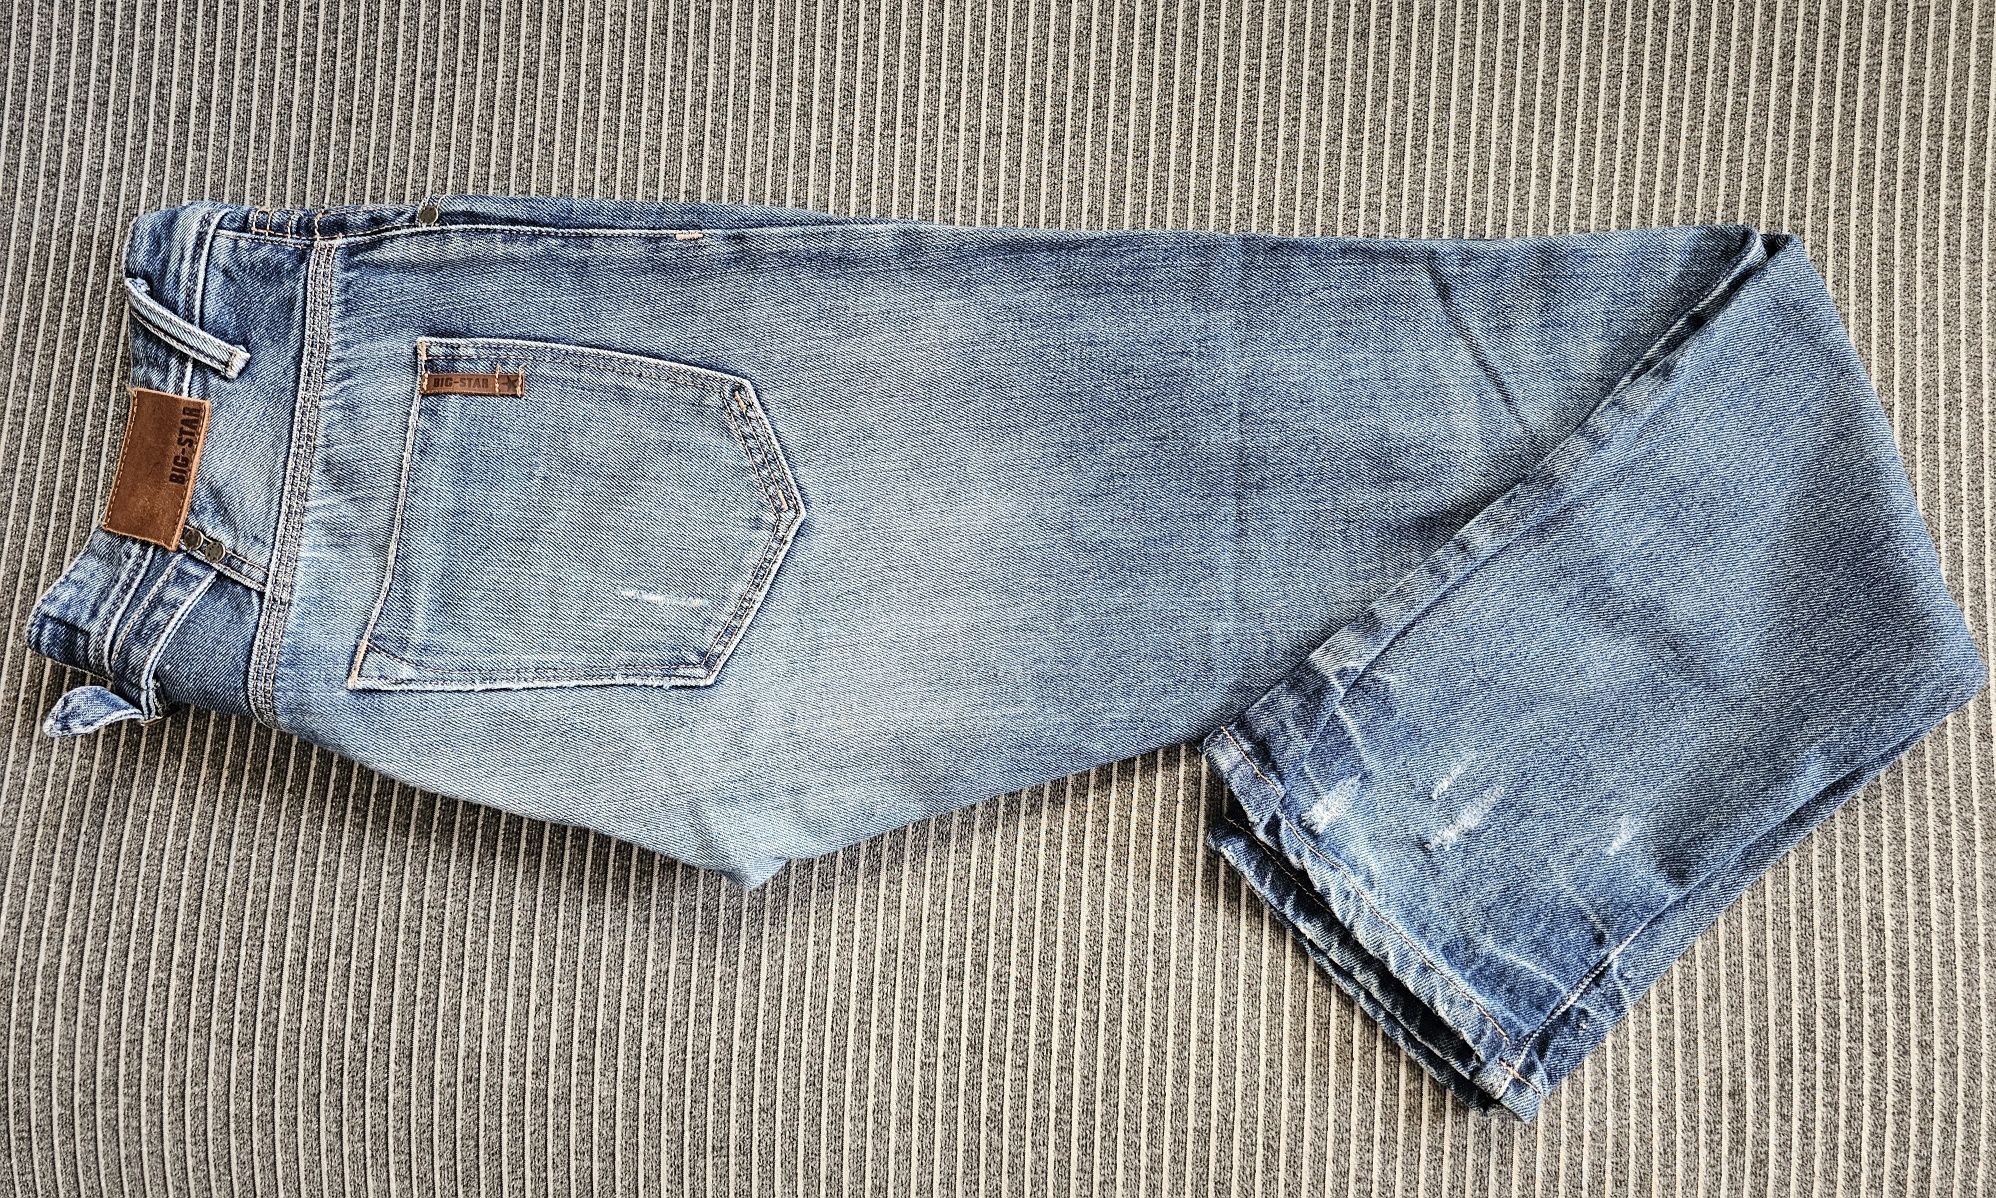 Spodnie Big Star jeans Alex 32/34